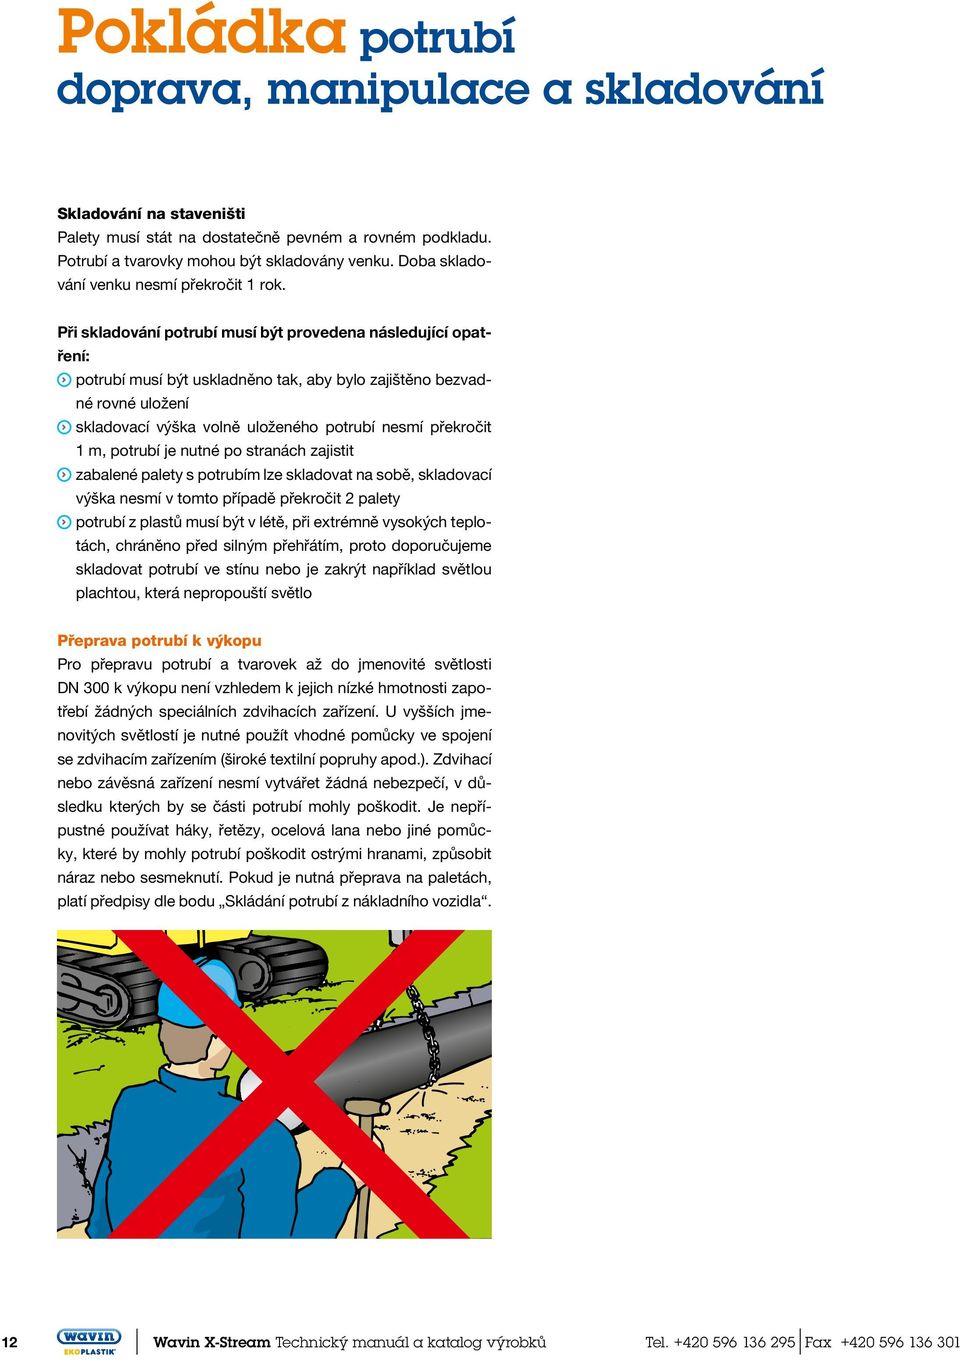 Při skladování potrubí musí být provedena následující opatření: potrubí musí být uskladněno tak, aby bylo zajištěno bezvadné rovné uložení skladovací výška volně uloženého potrubí nesmí překročit 1